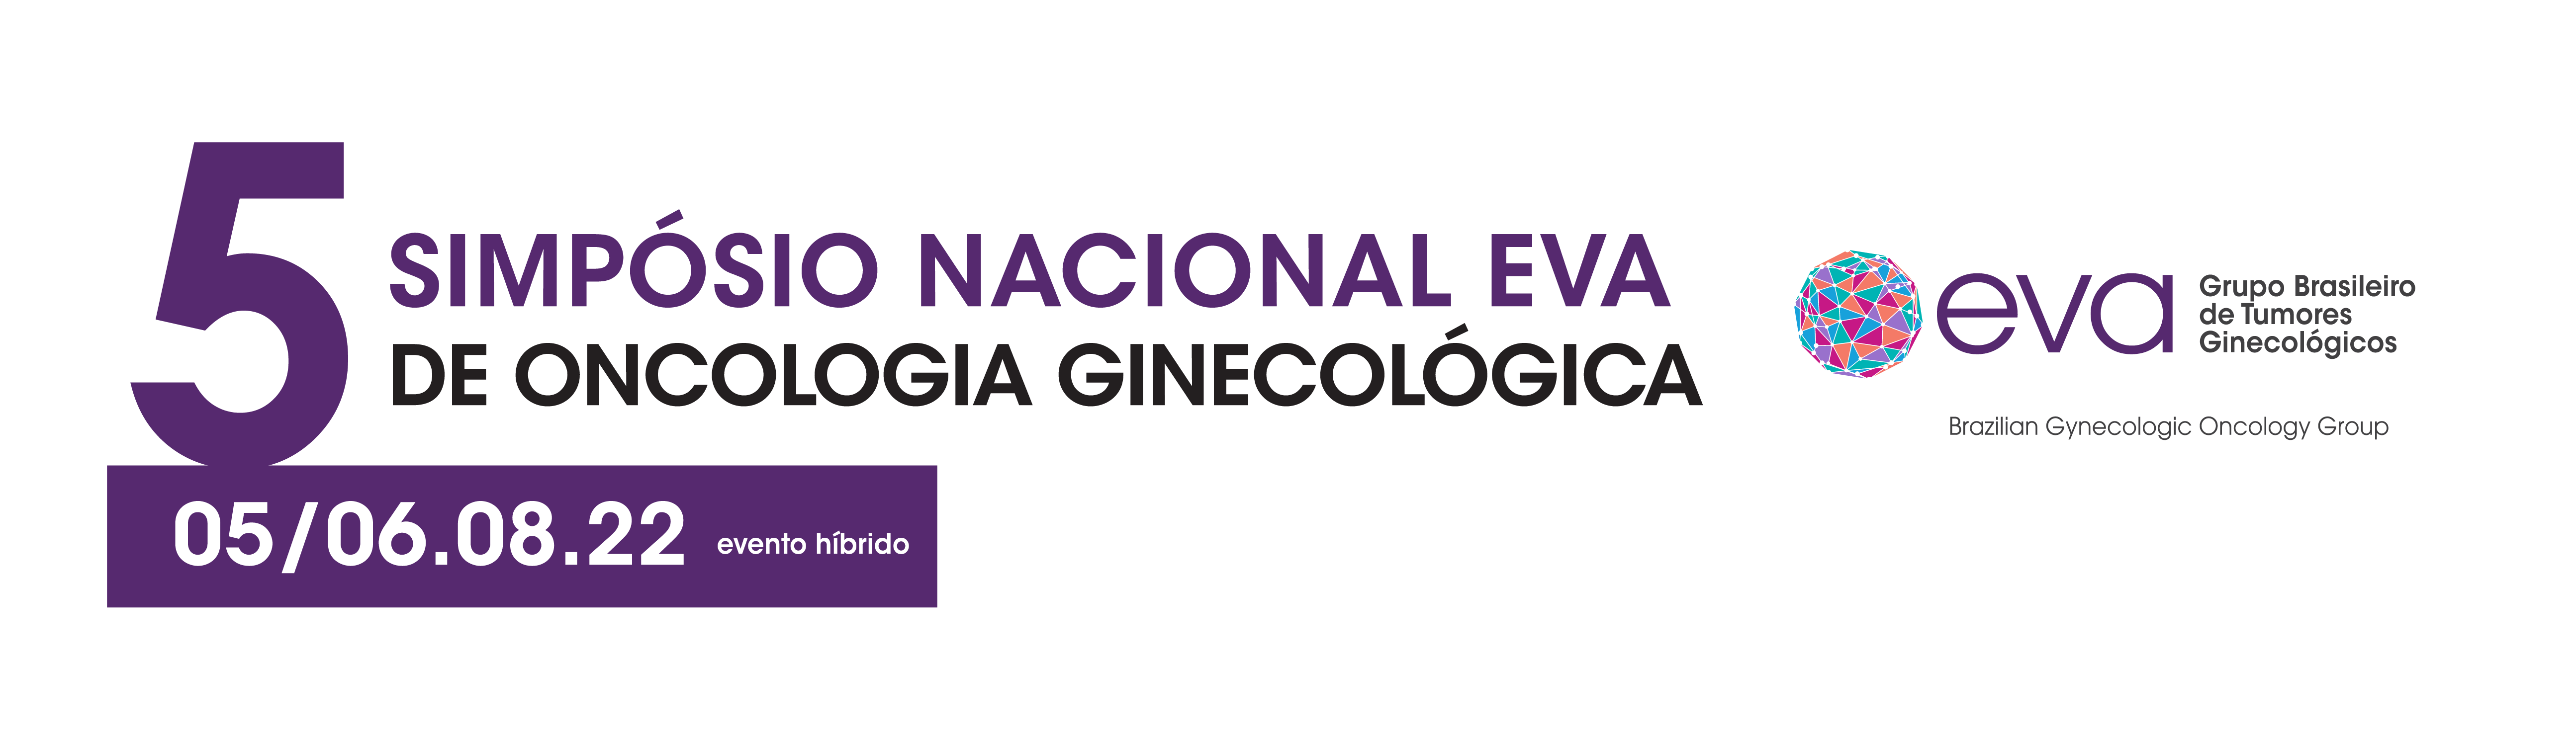 V Simpósio Nacional EVA de Oncologia Ginecológica